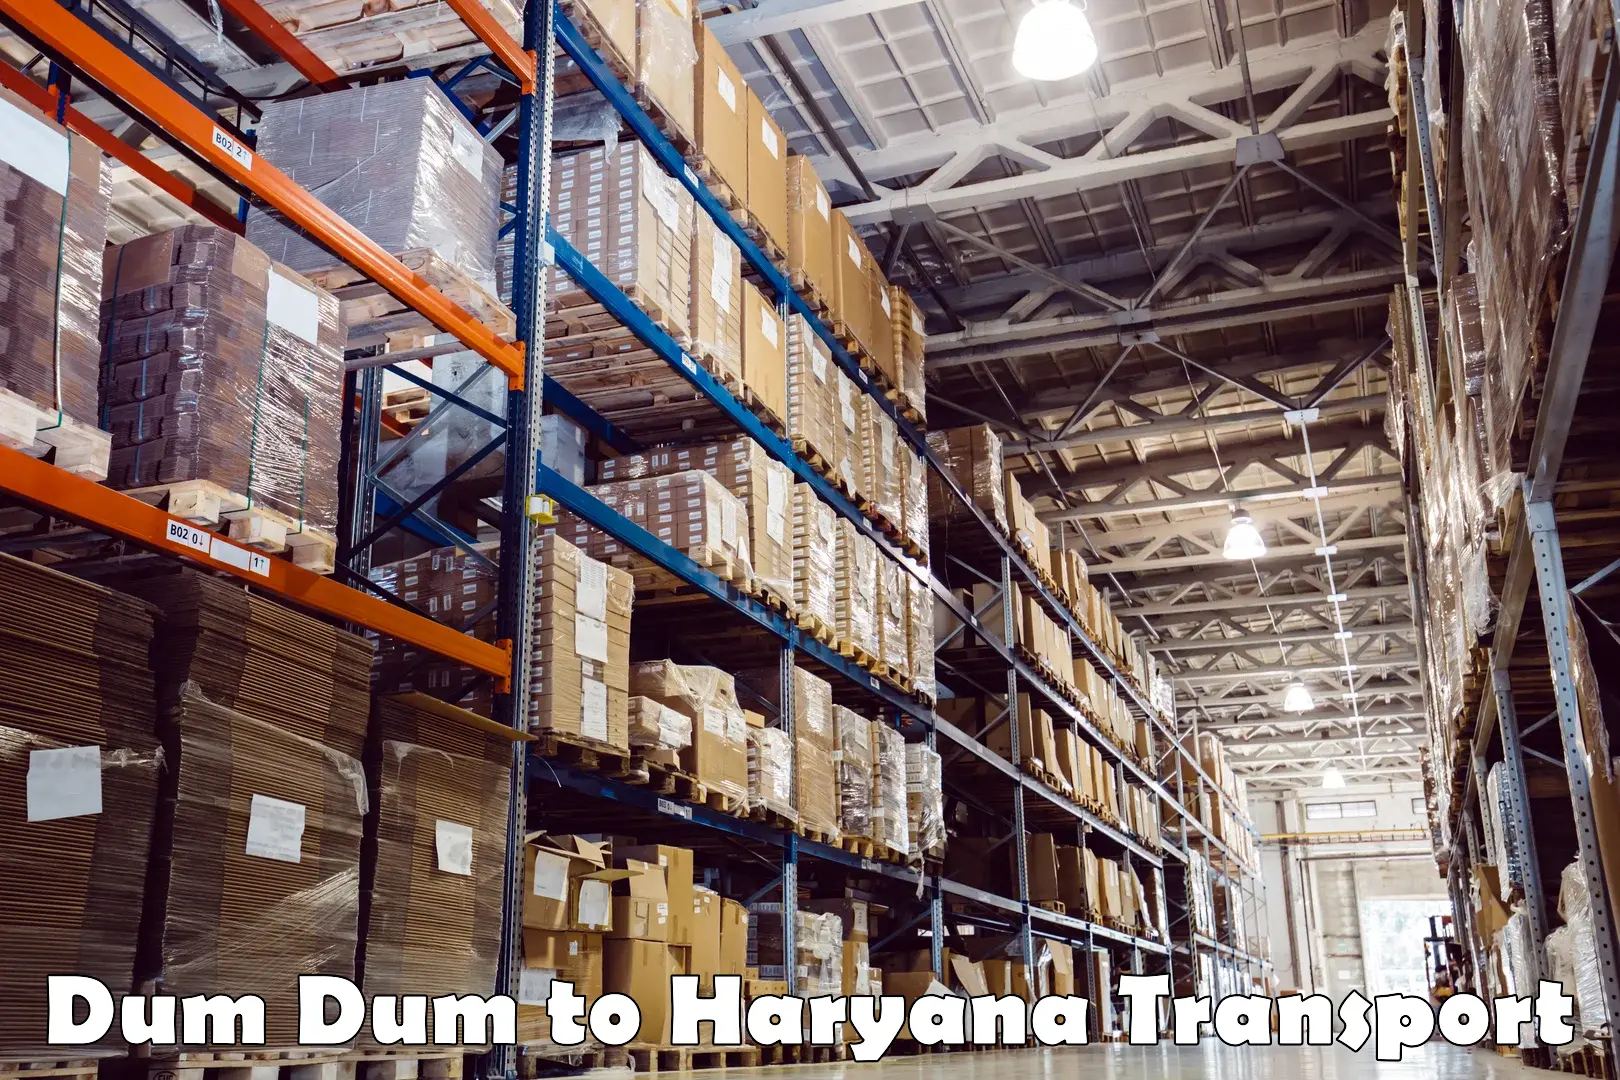 Container transport service Dum Dum to Haryana